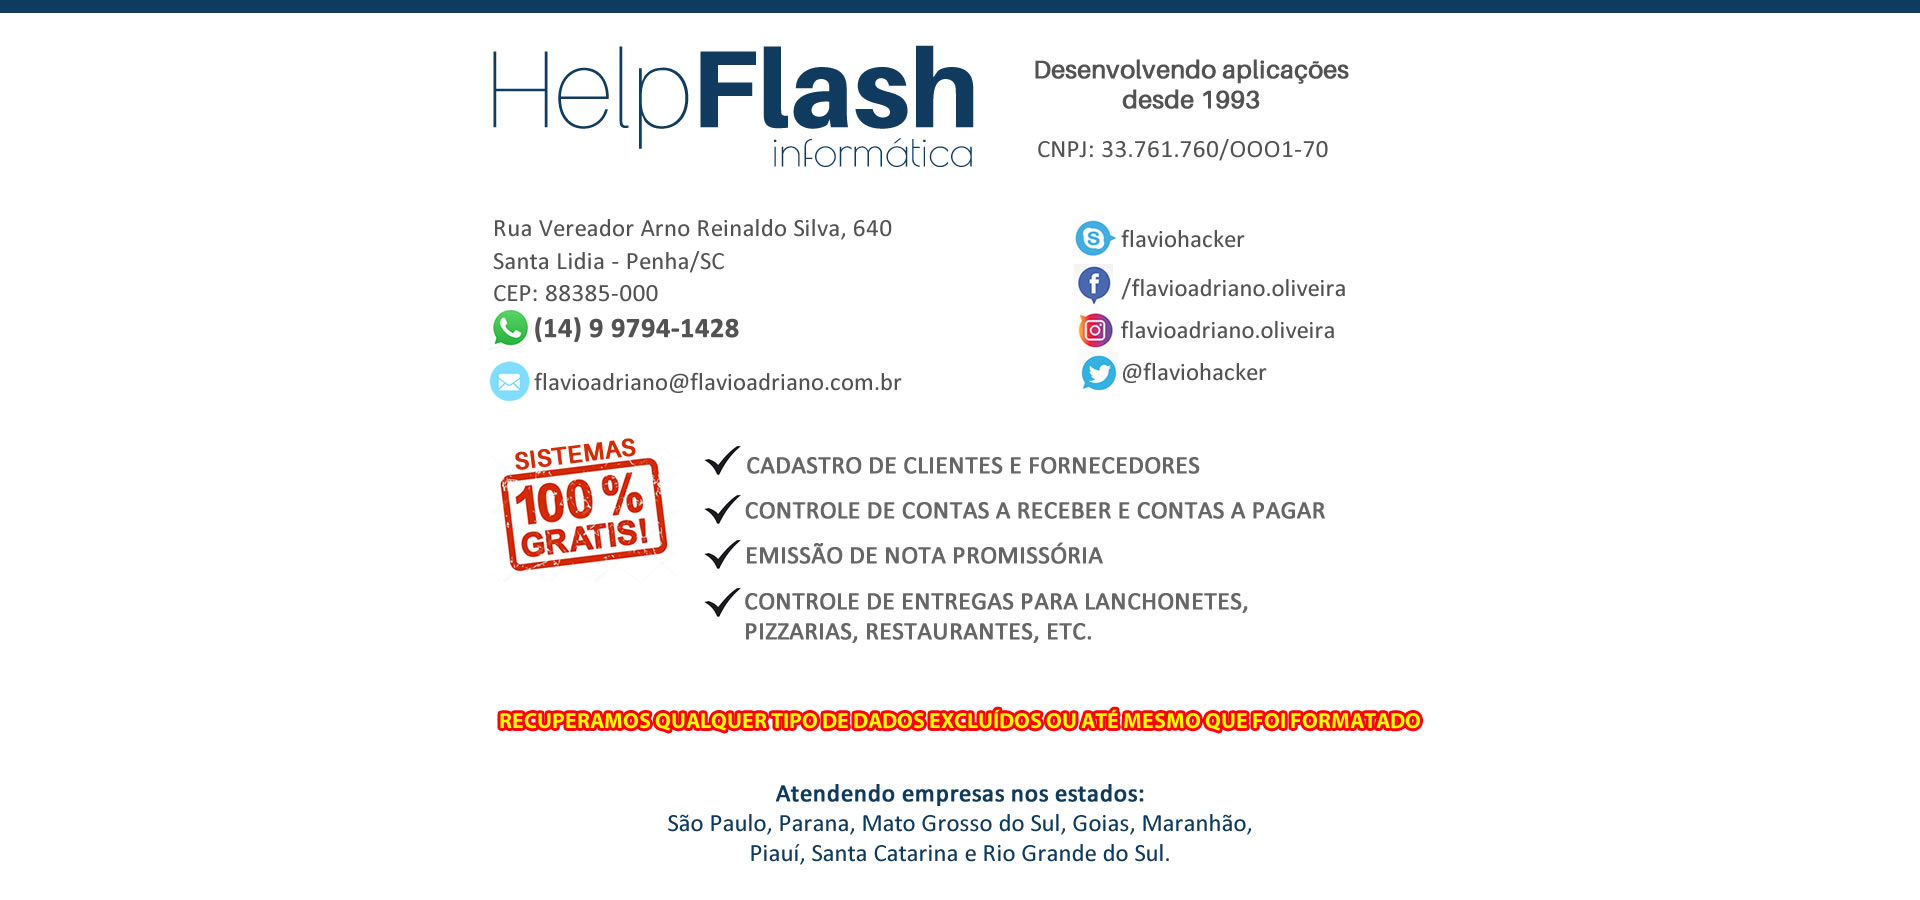 HelpFlash Informática - desenvolvendo aplicações desde 1993